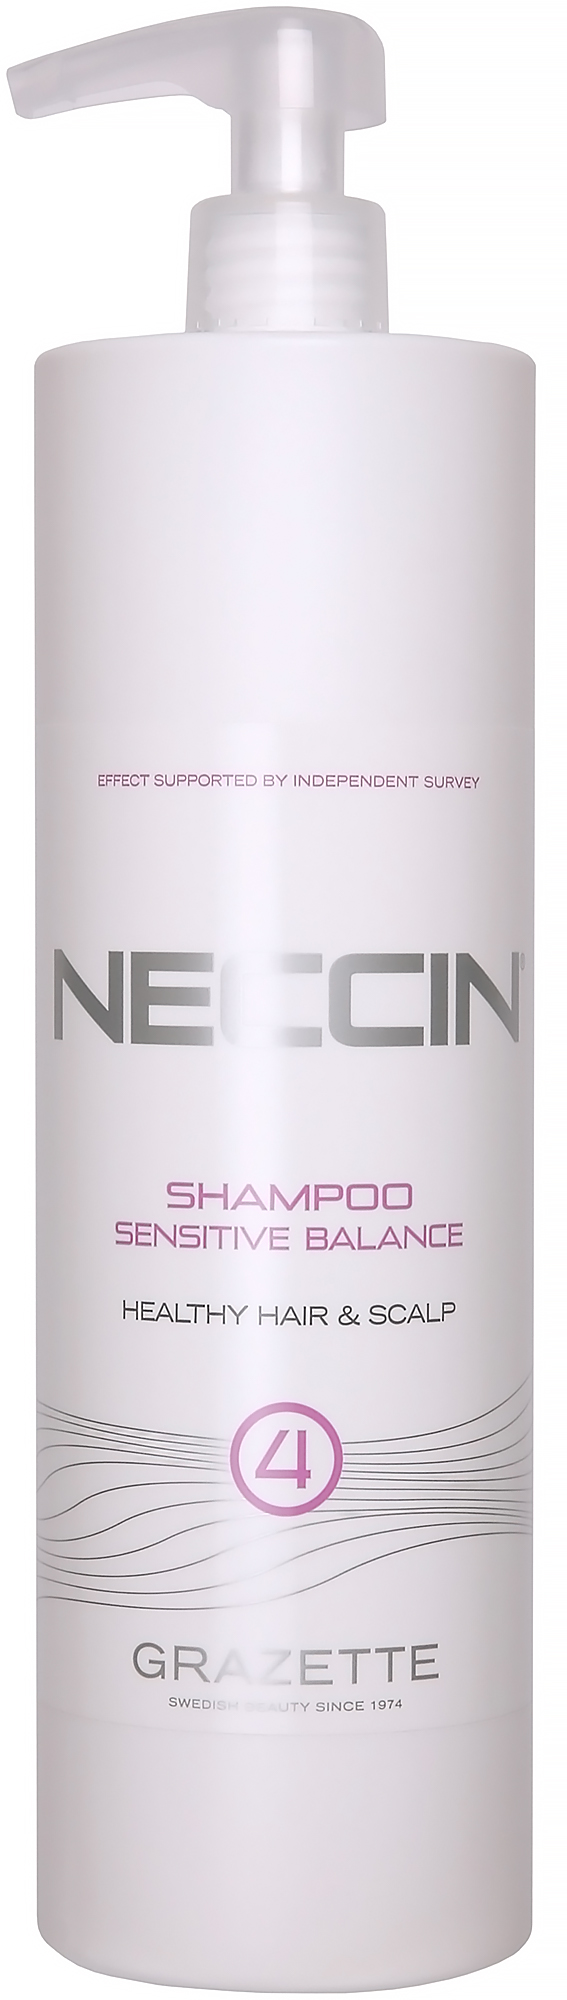 Grazette Neccin No4 Sensitive Balance Shampoo 1000 ml lyko.com